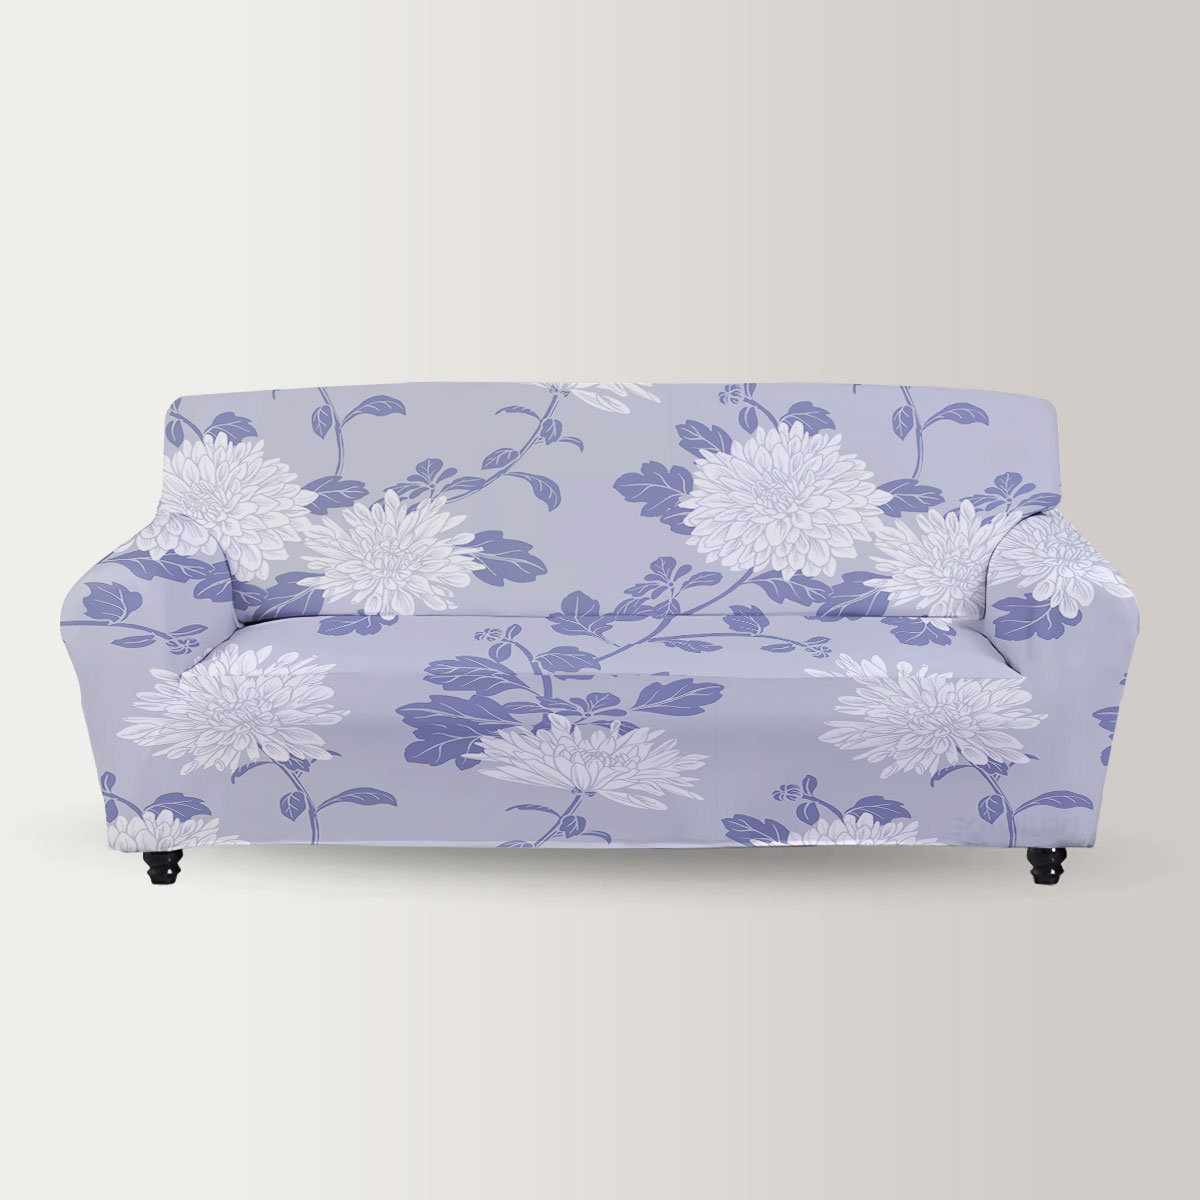 White Chrysanthemum Sofa Cover